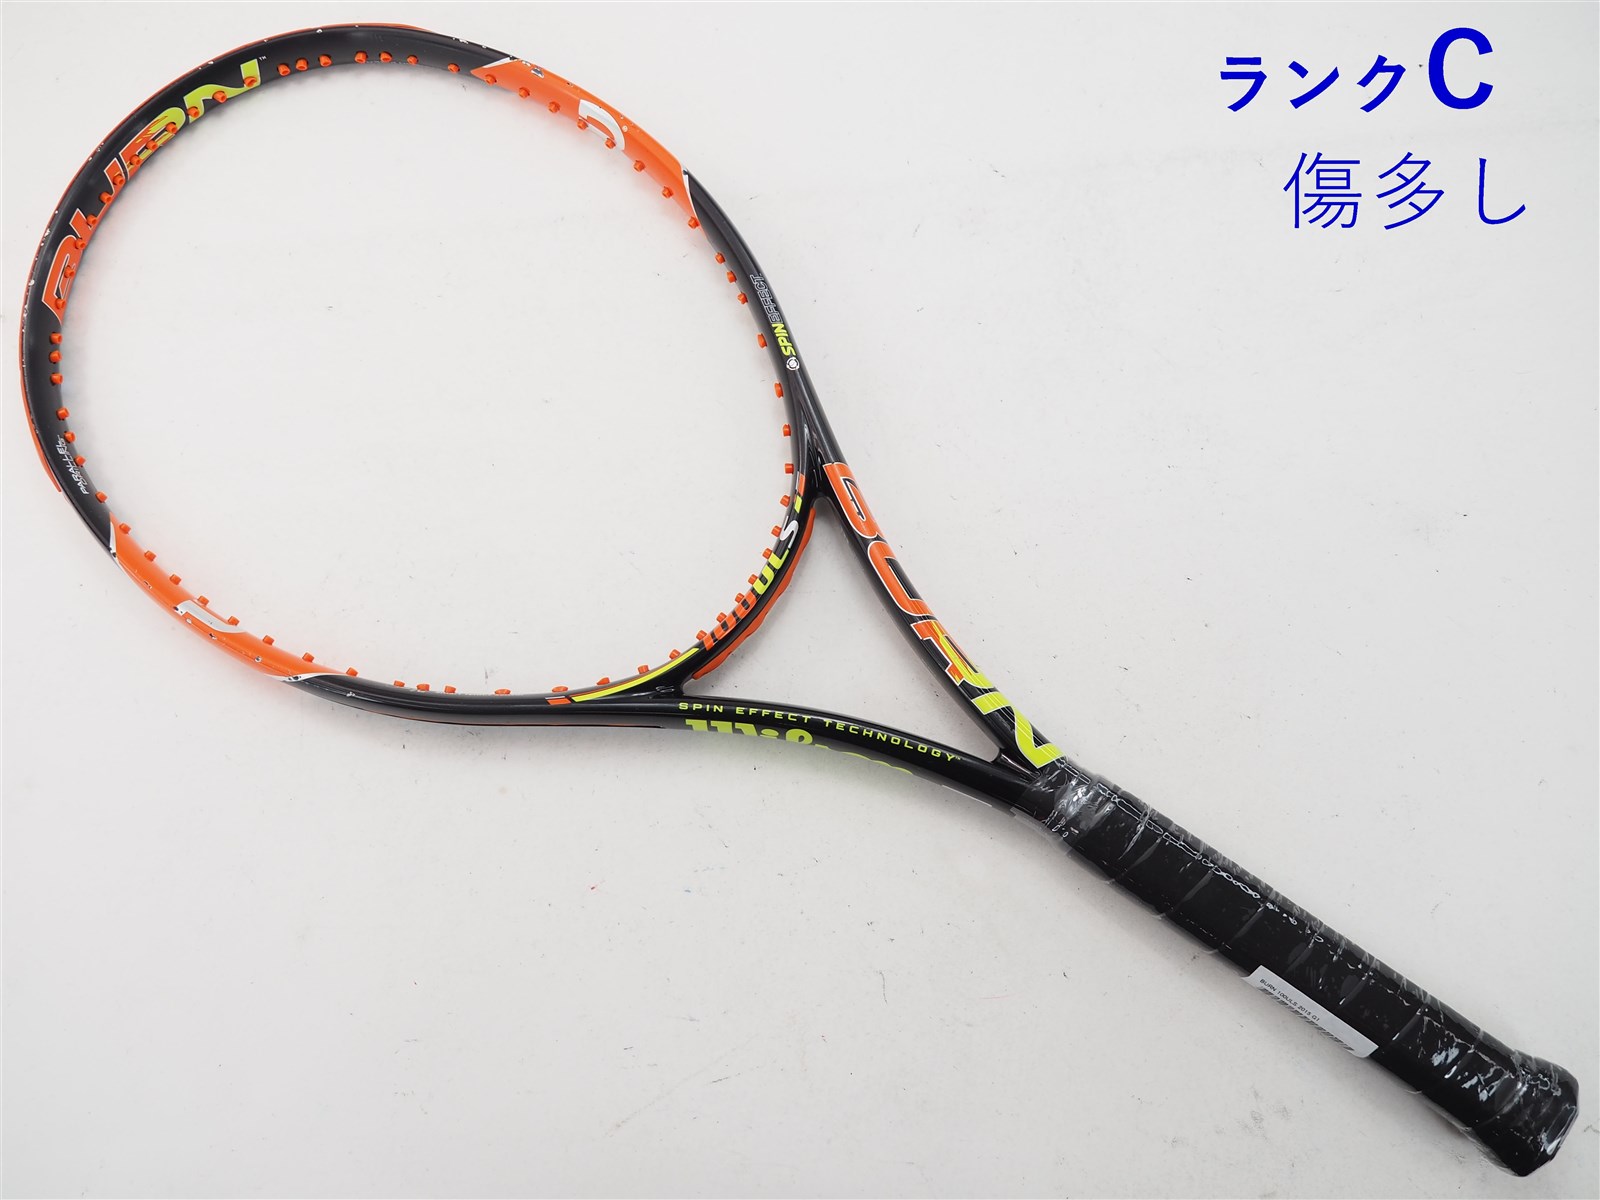 テニスラケット ウィルソン wilson - ラケット(硬式用)